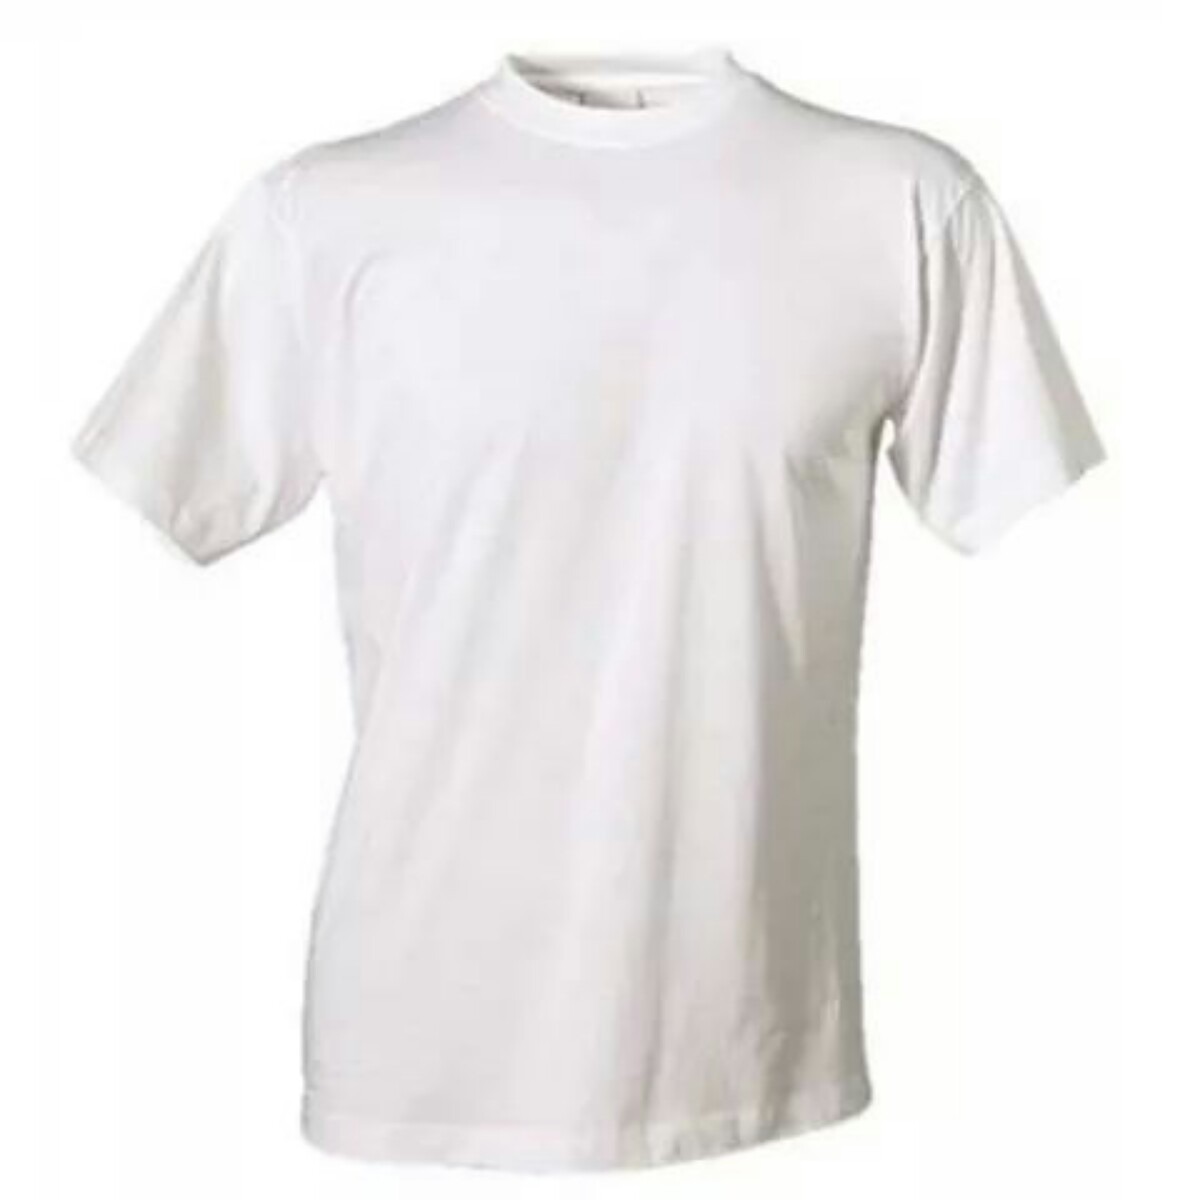 Мужская оптом дешево. Белая футболка мужская. Хлопковая футболка. Белые майки мужские хлопковые. Мужская футболка хлопок.